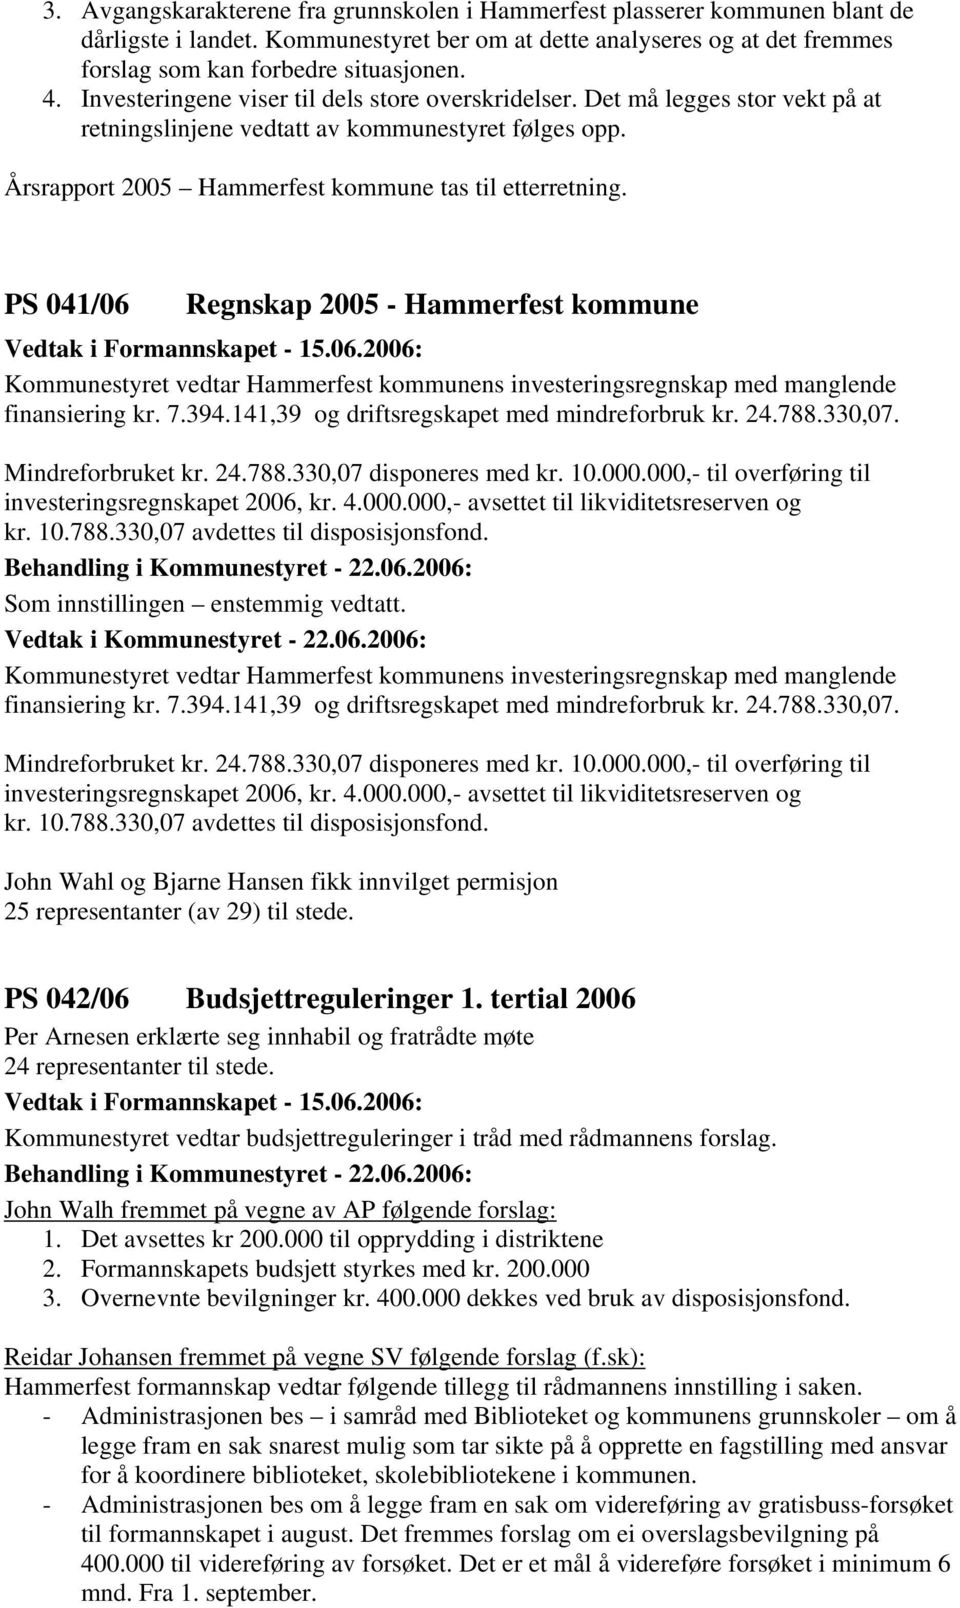 PS 041/06 Regnskap 2005 - Hammerfest kommune Kommunestyret vedtar Hammerfest kommunens investeringsregnskap med manglende finansiering kr. 7.394.141,39 og driftsregskapet med mindreforbruk kr. 24.788.